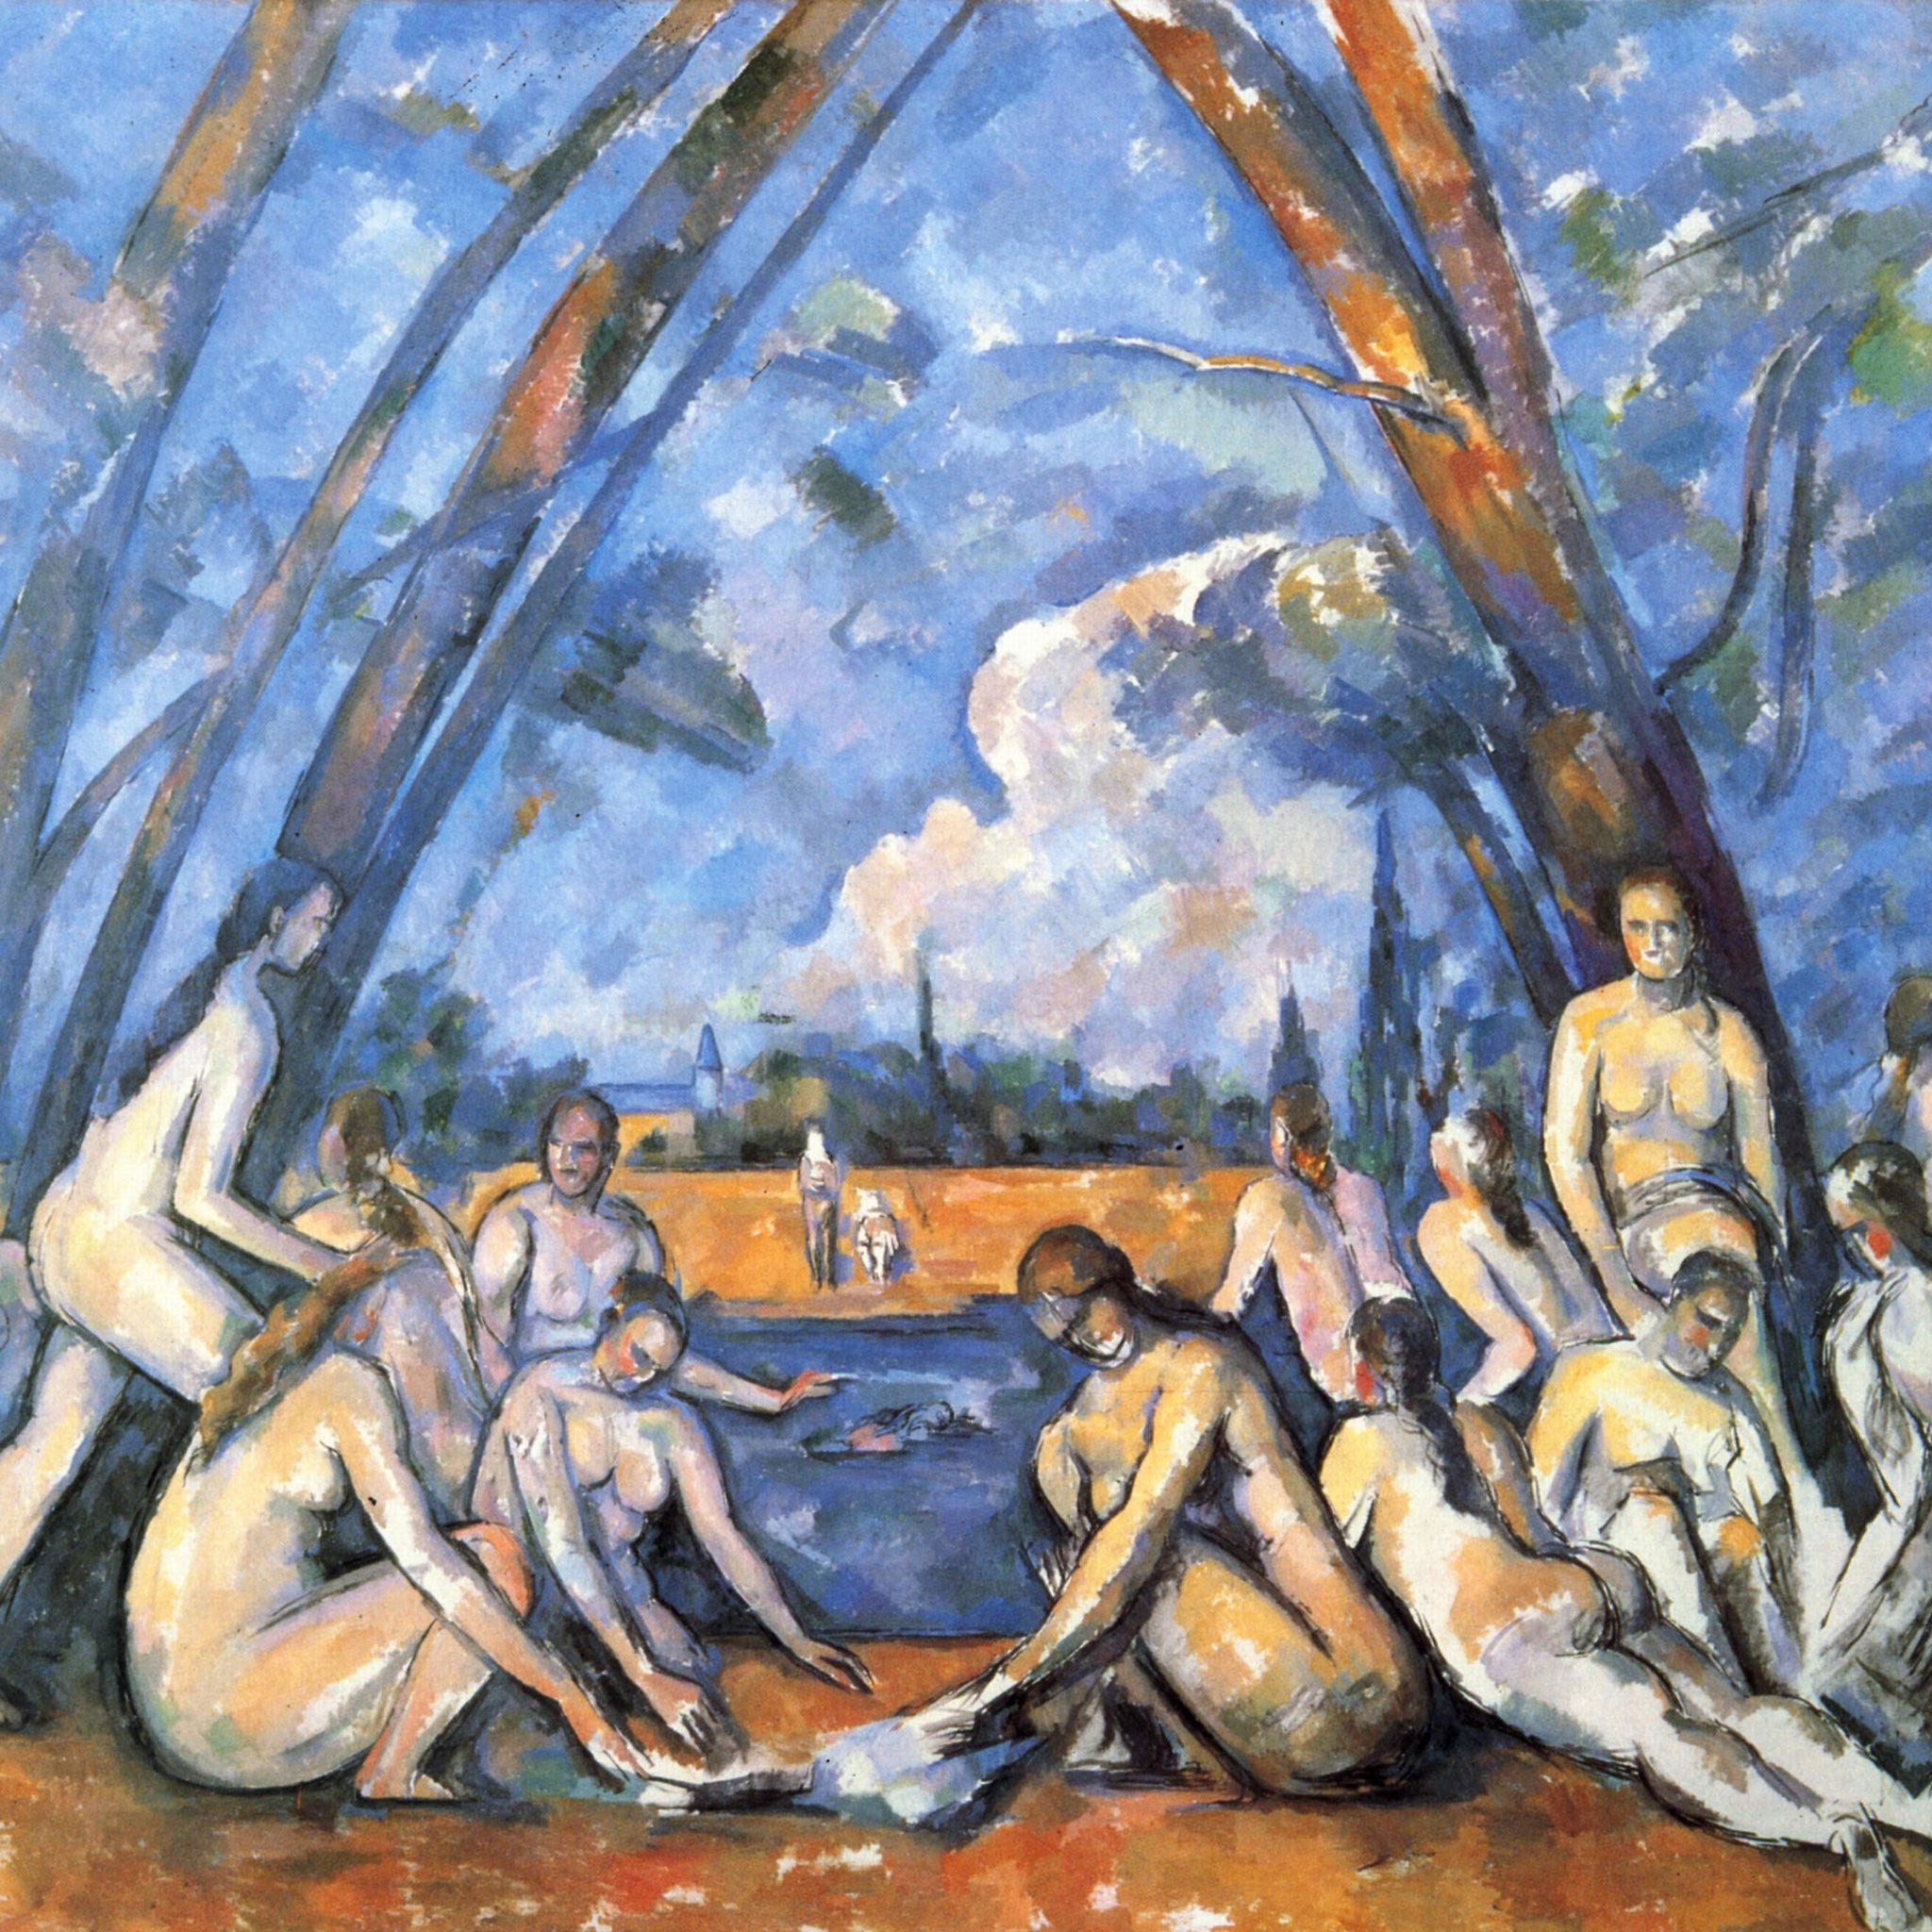 Les Grandes Baigneuses - Paul Cézanne